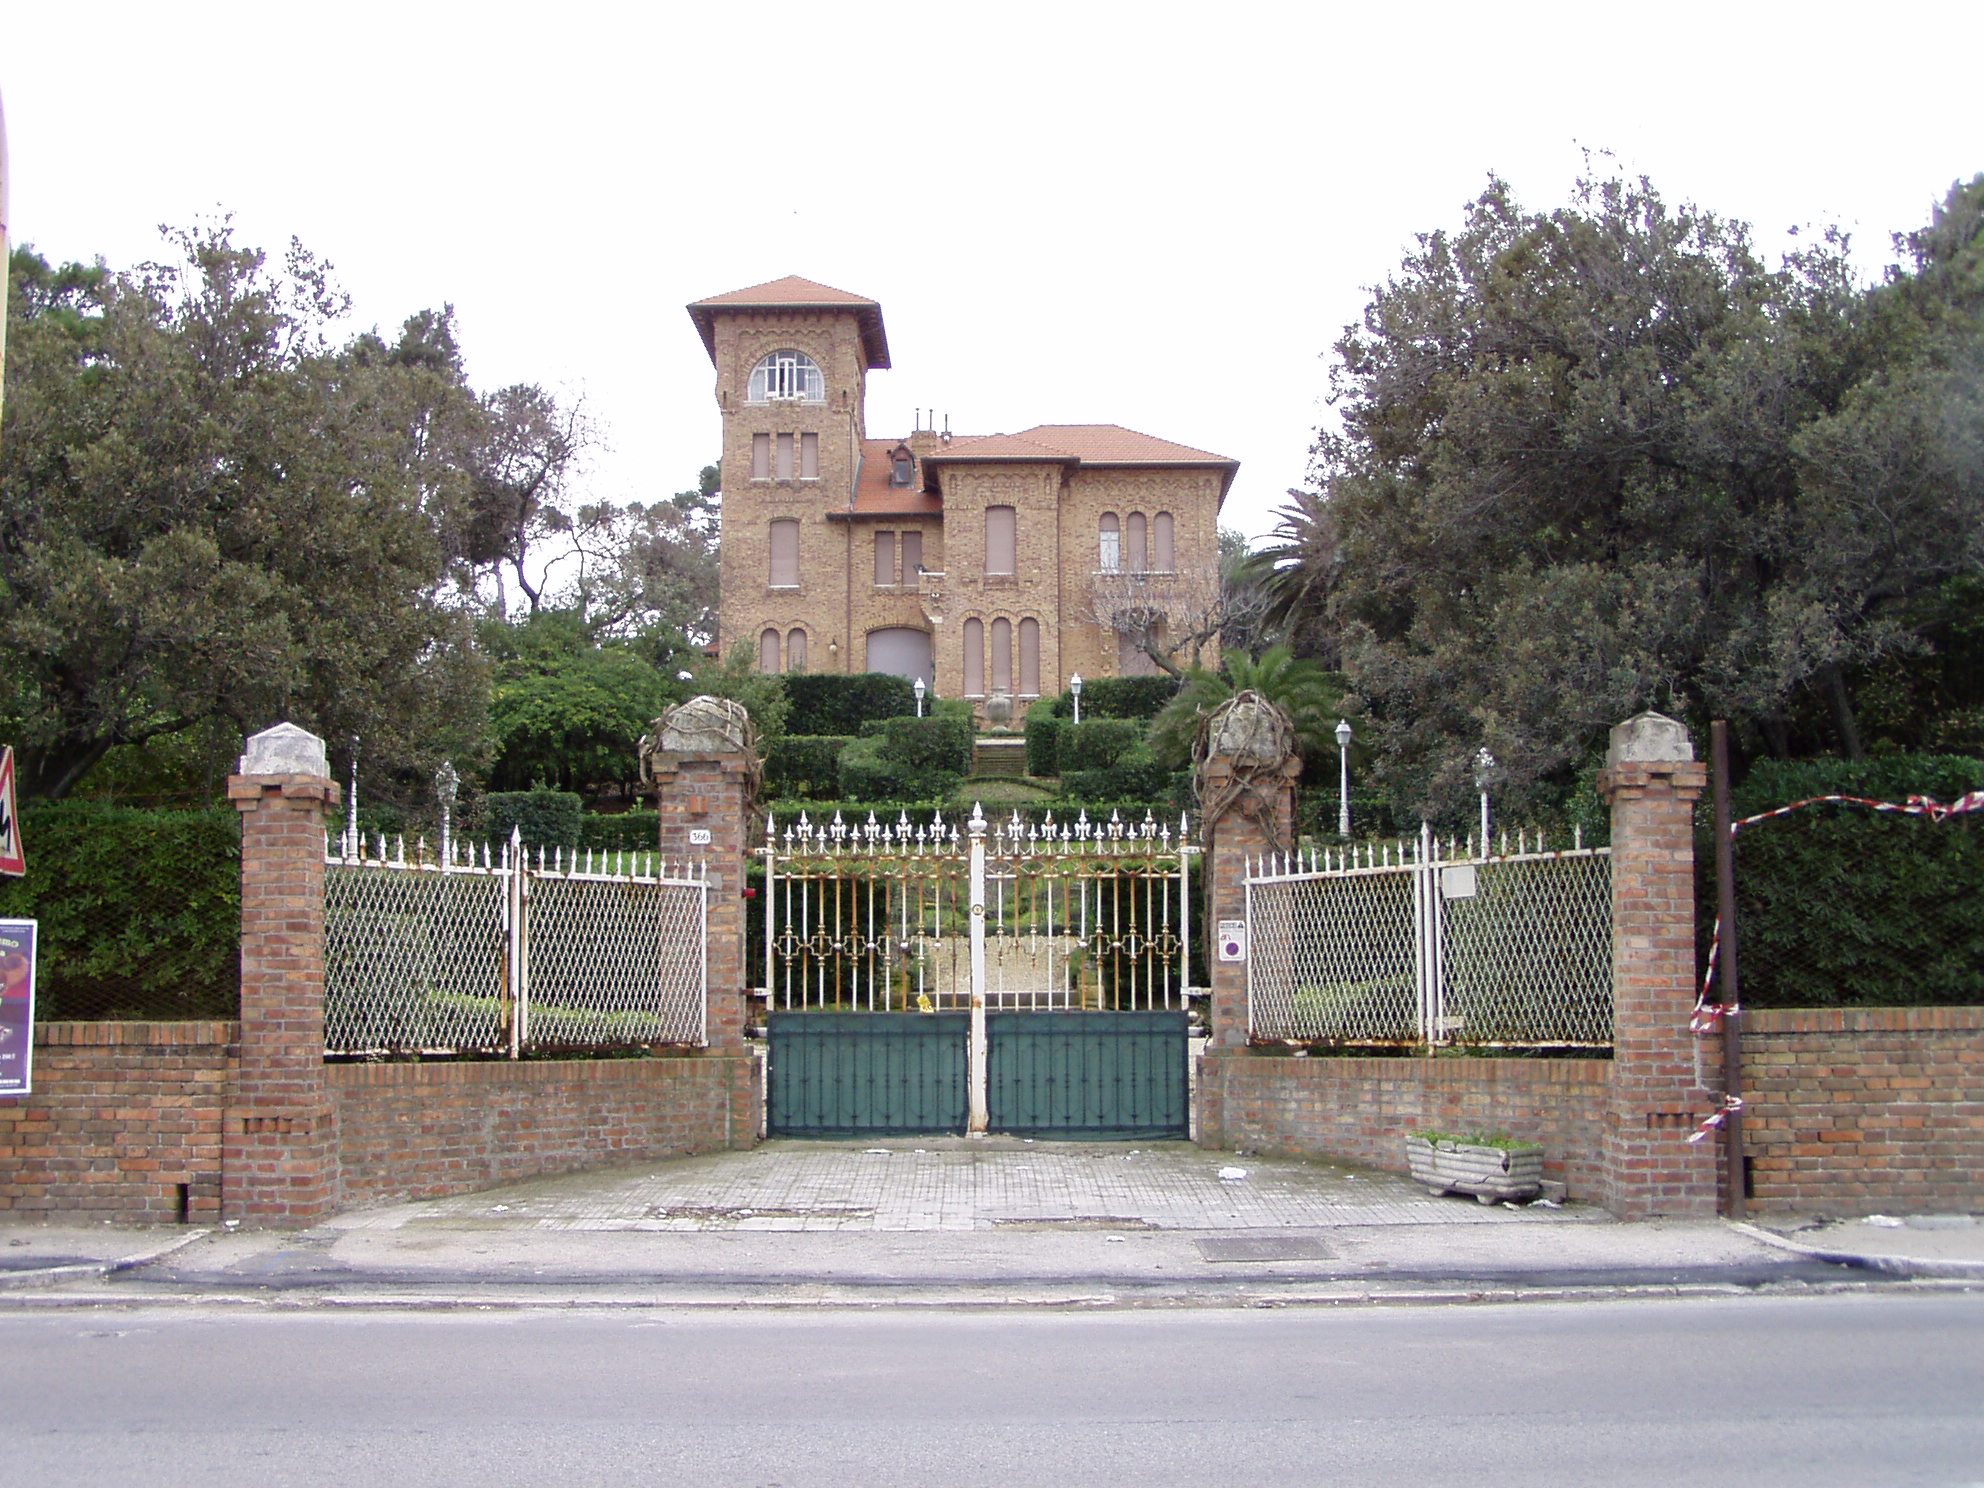 Villa Eleonora Almagià (casino, di villeggiatura) - Ancona (AN) 